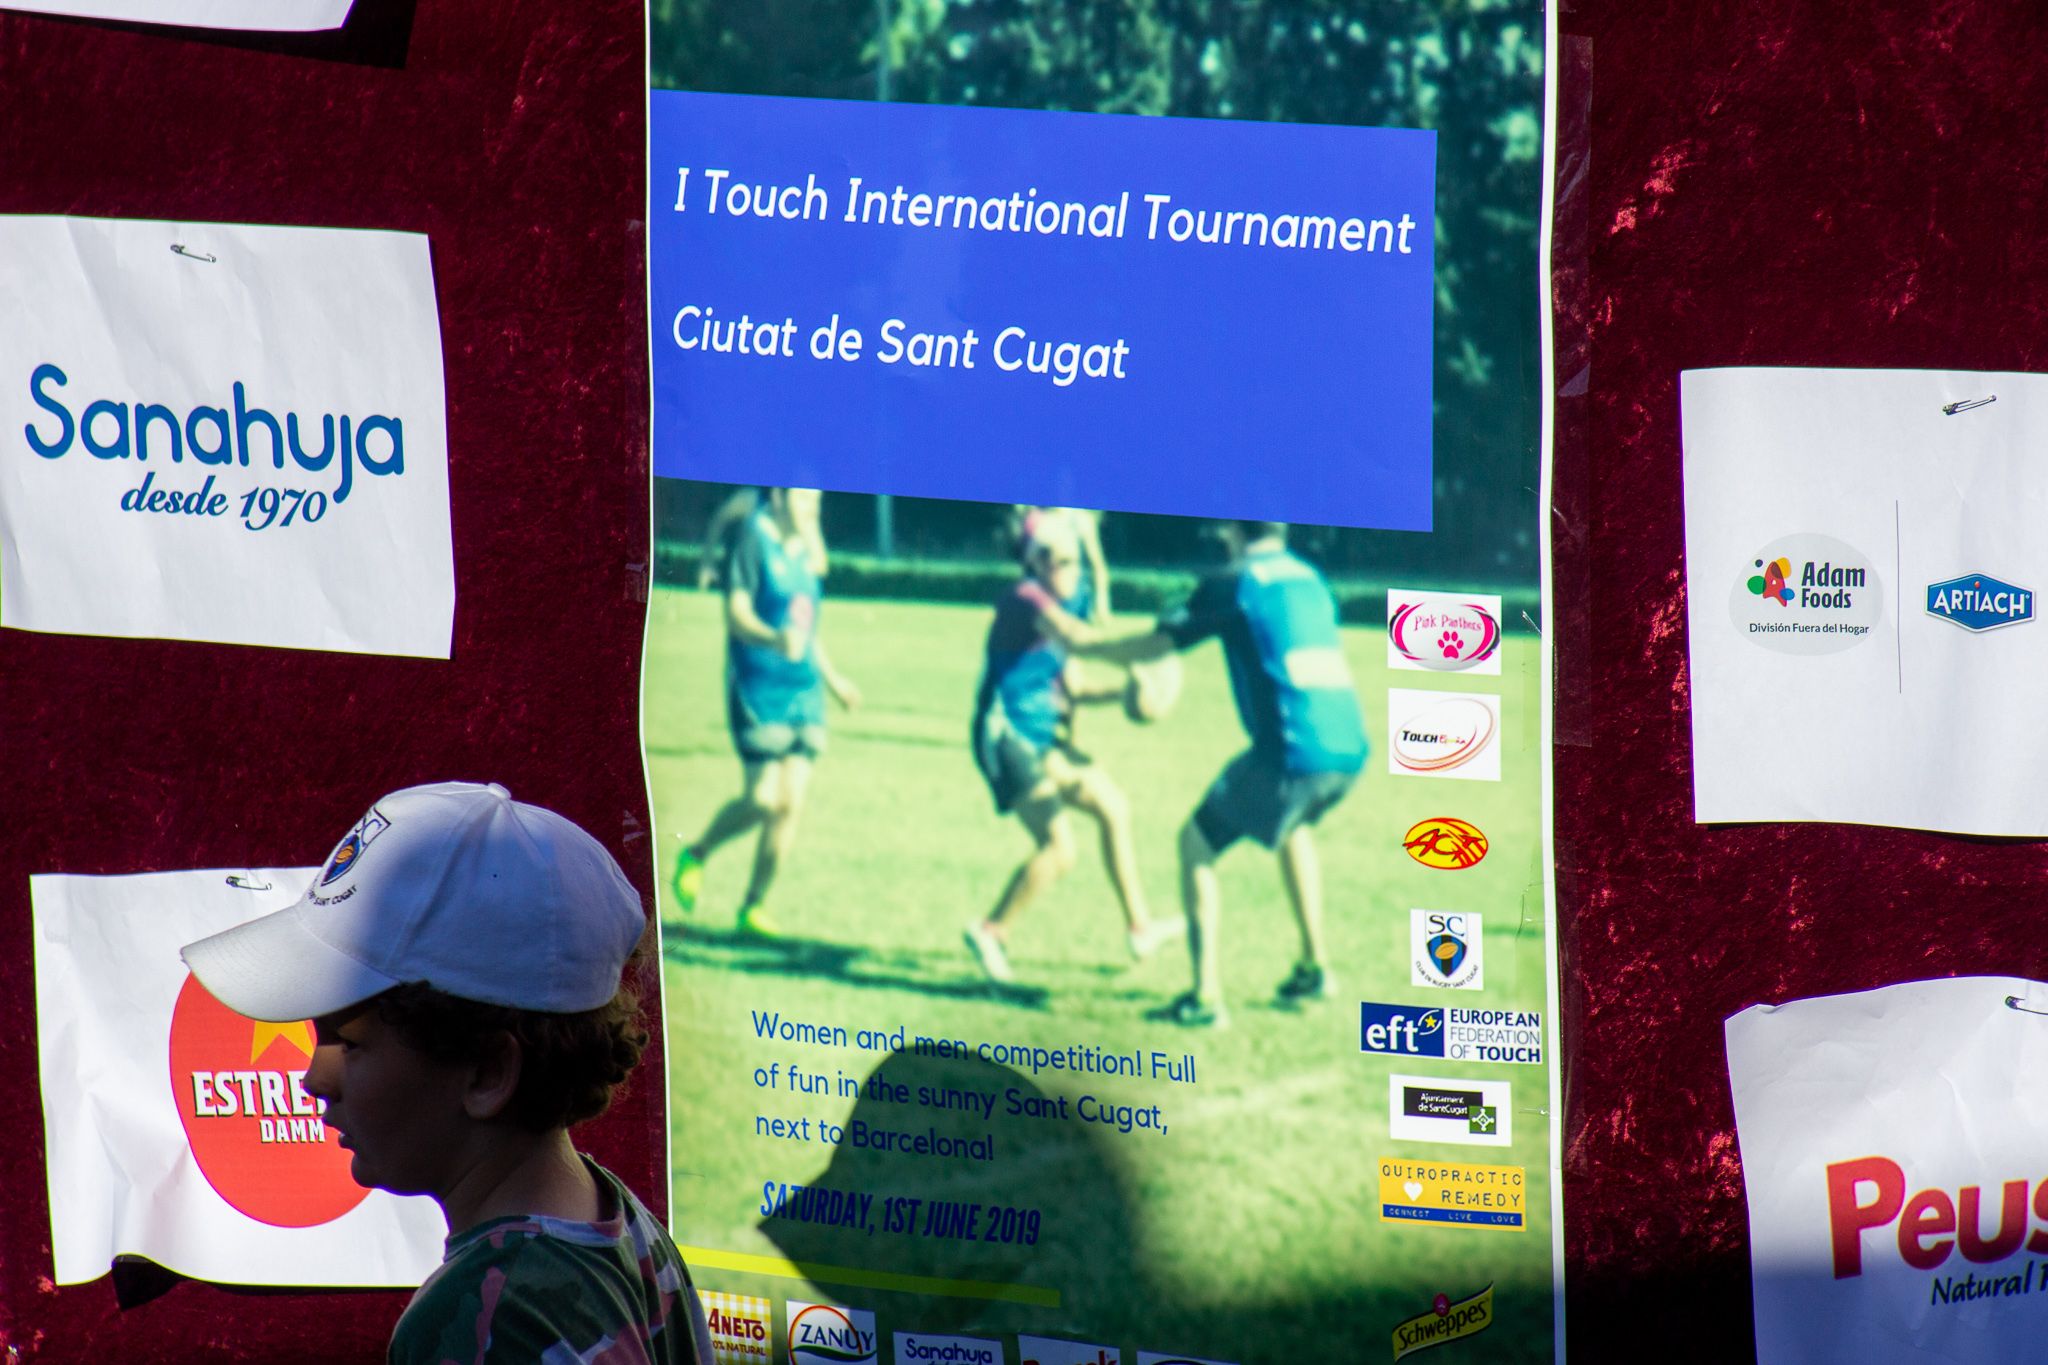 1r touch international tournament ciutat de Sant Cugat. FOTO: Ale Gómez